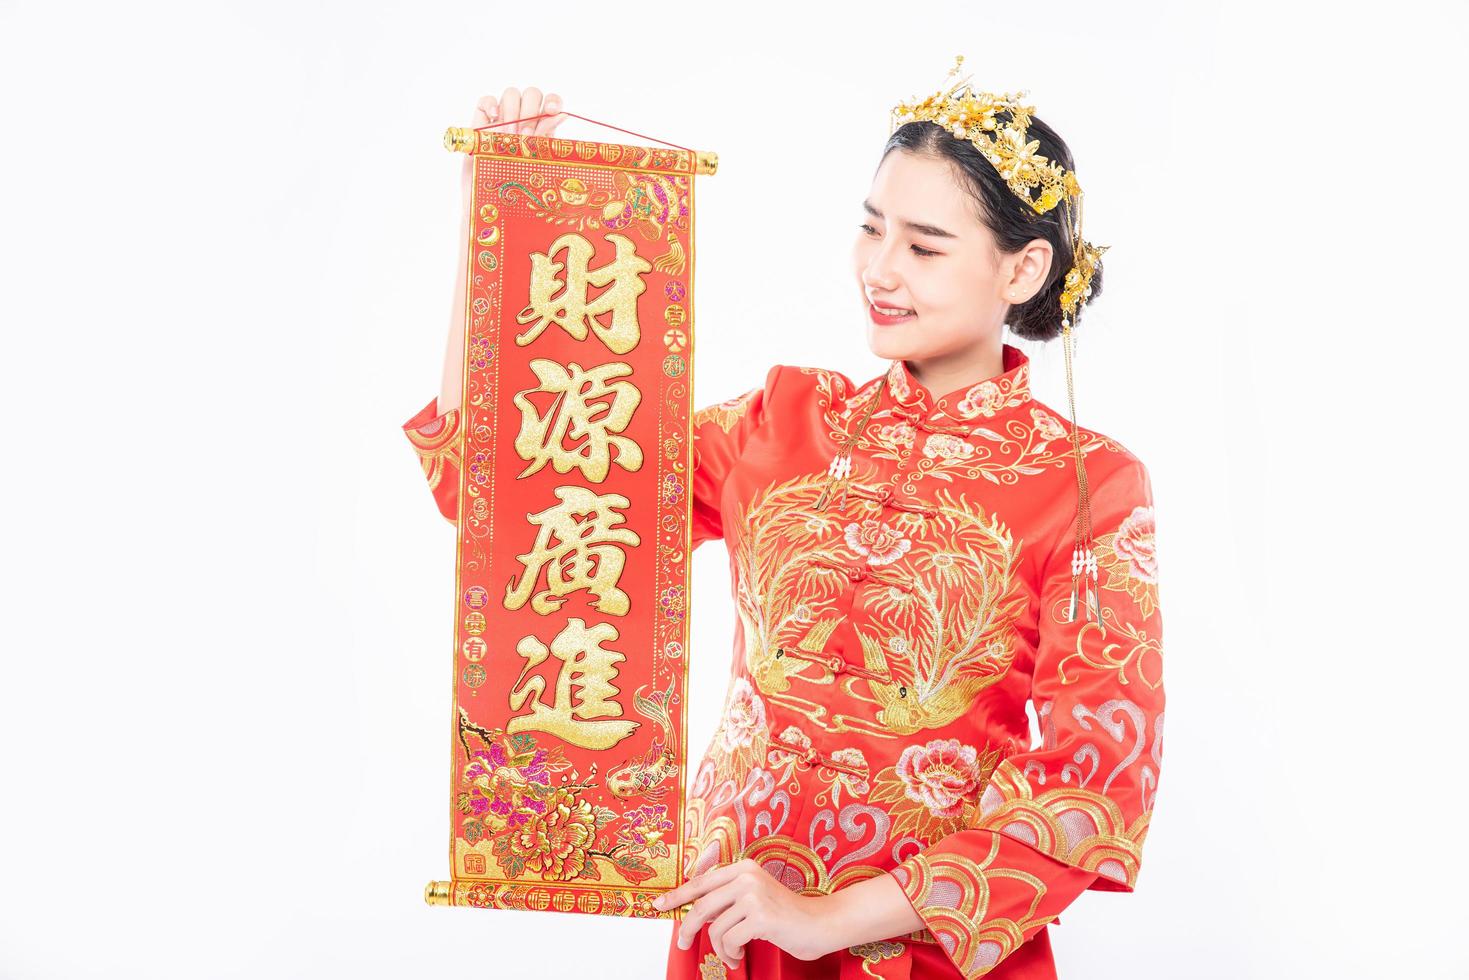 une femme porte un costume cheongsam heureux d'avoir reçu la carte de voeux chinoise du patron au nouvel an chinois photo